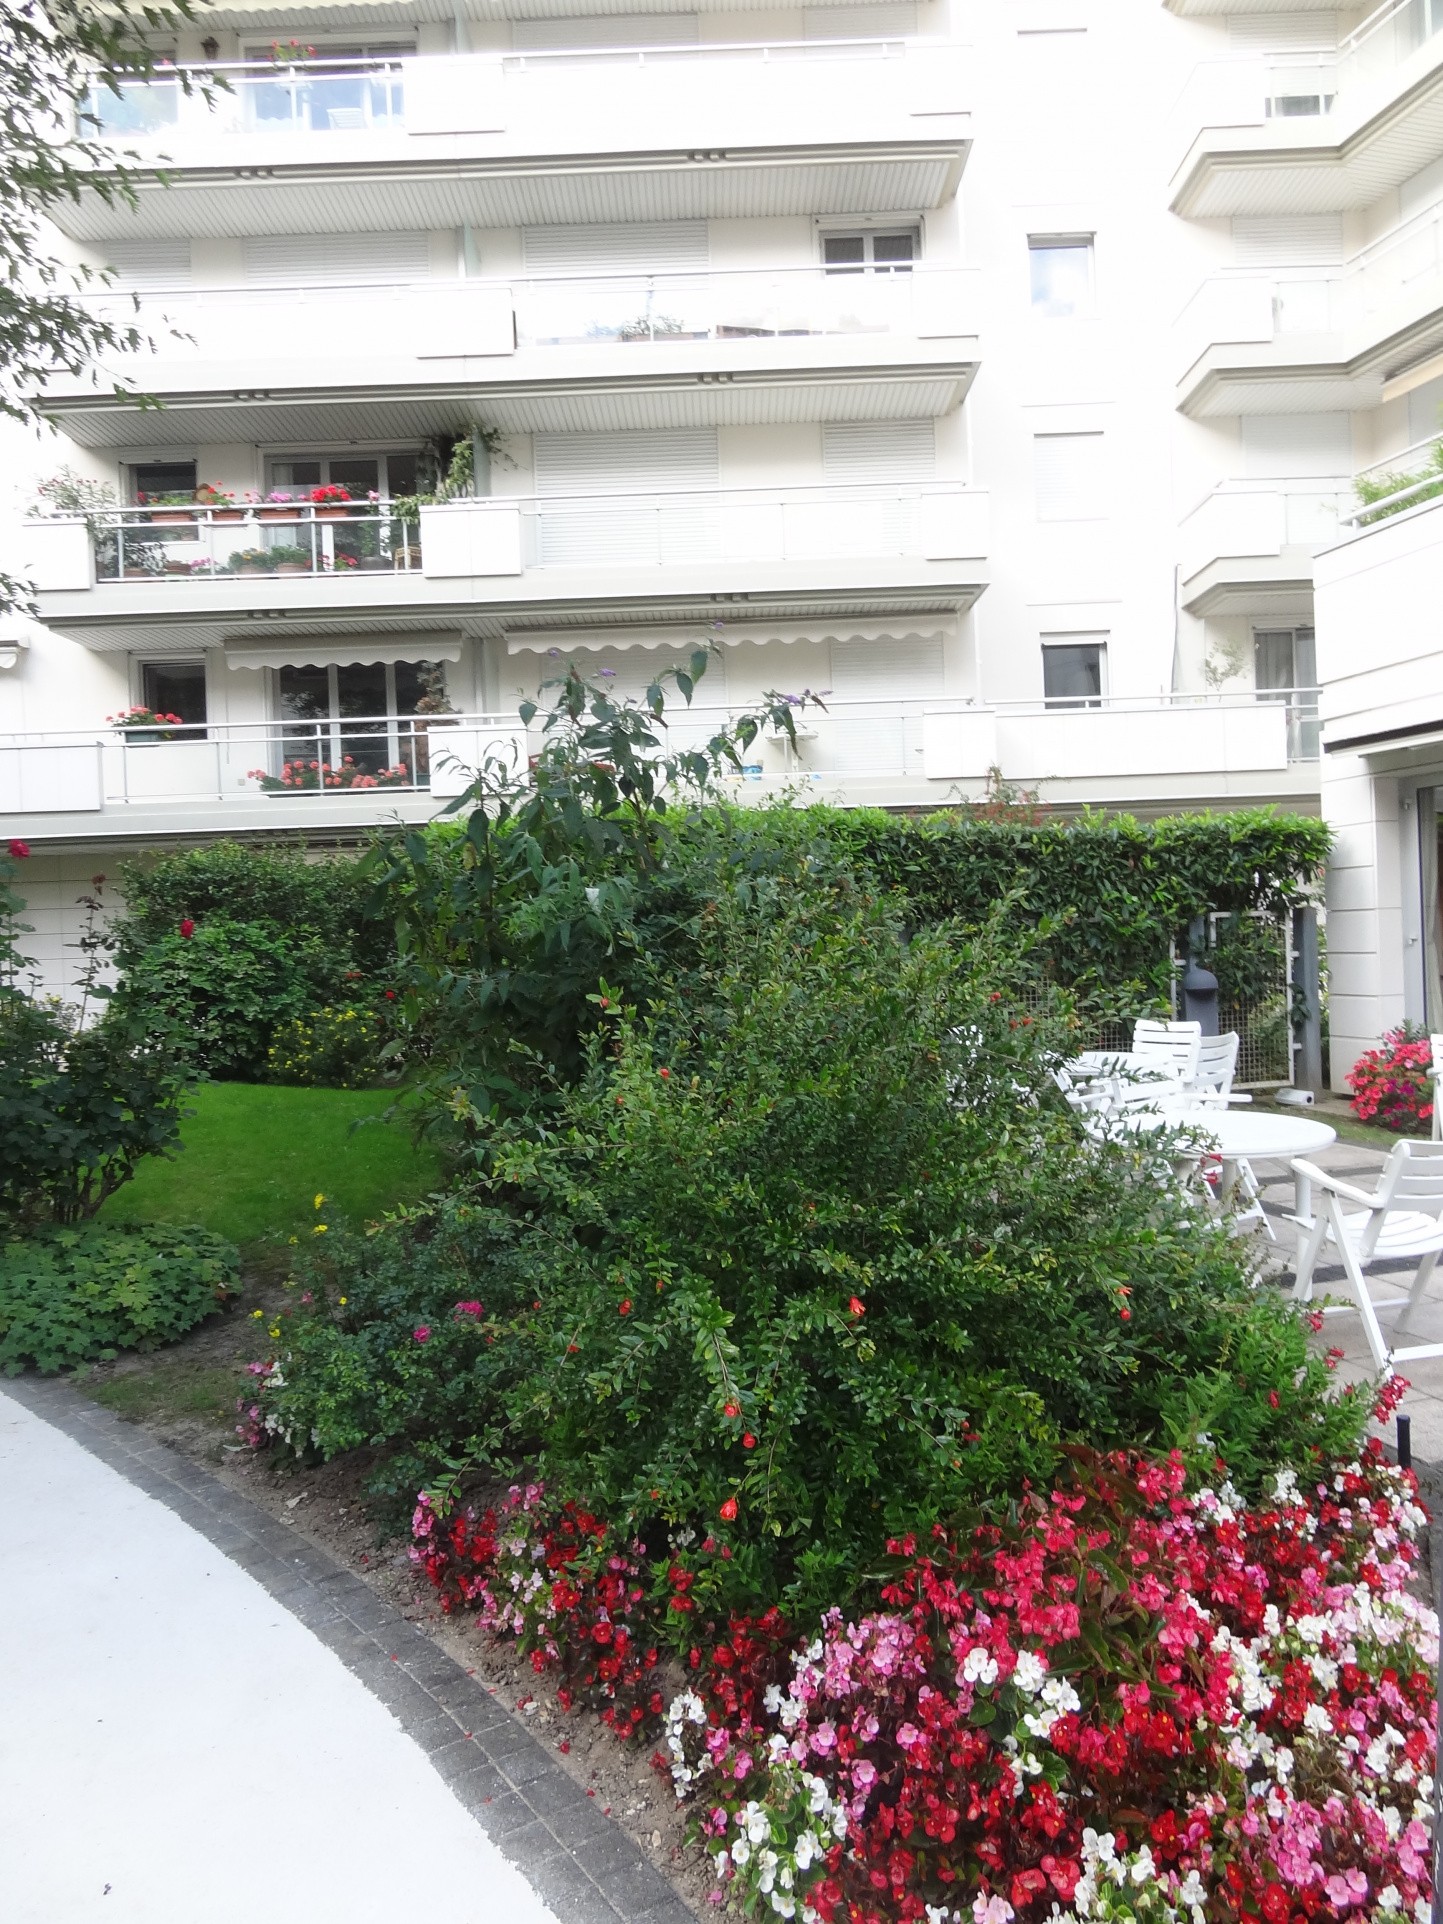 Location Appartement à Boulogne-Billancourt 2 pièces